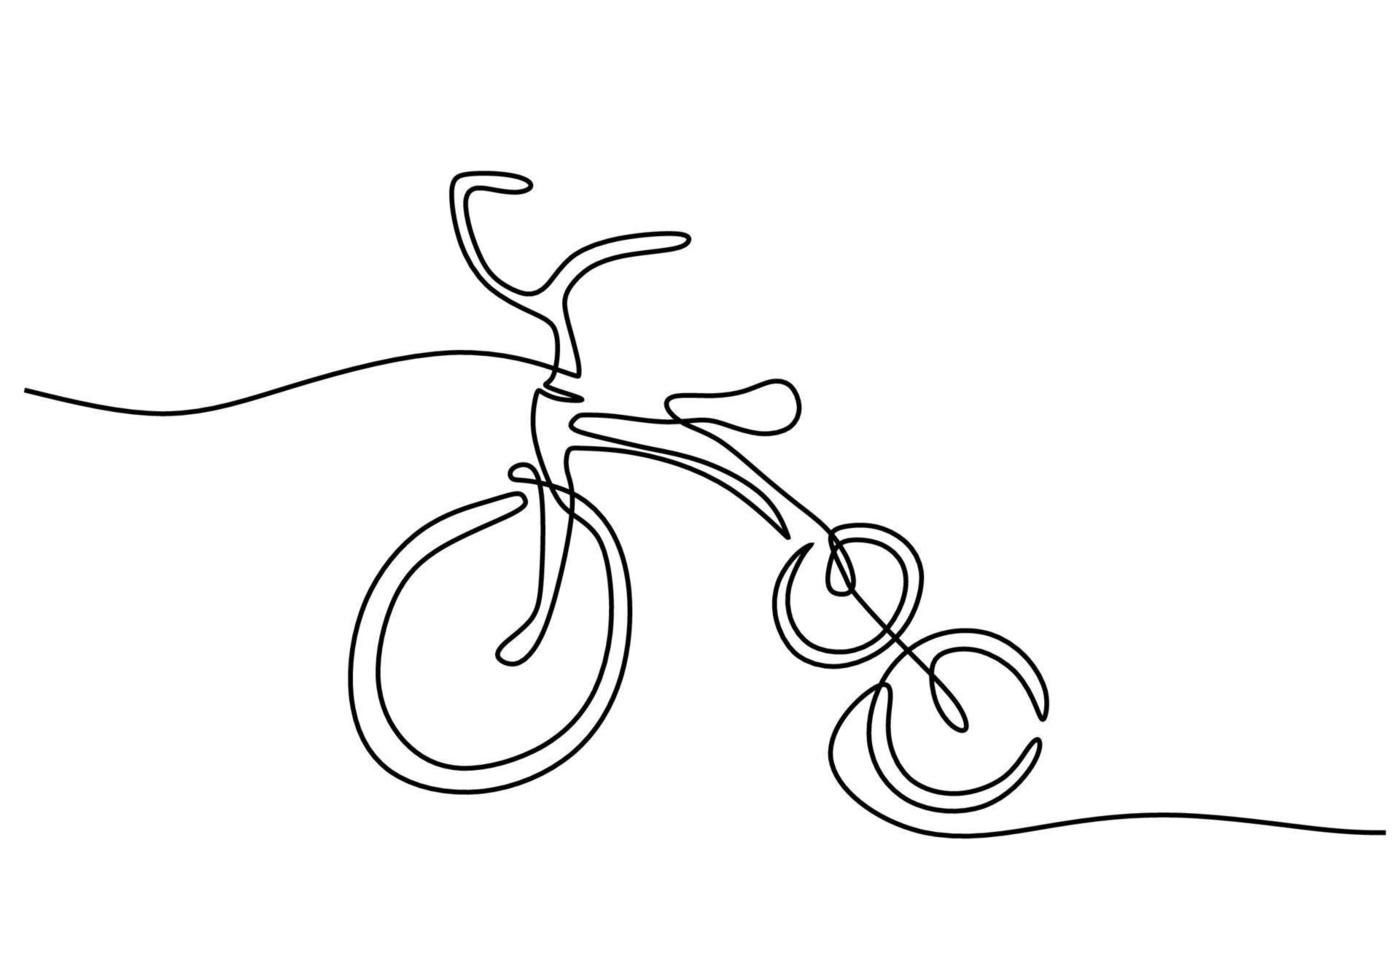 une seule ligne continue de tricycle pour jouet pour enfants vecteur